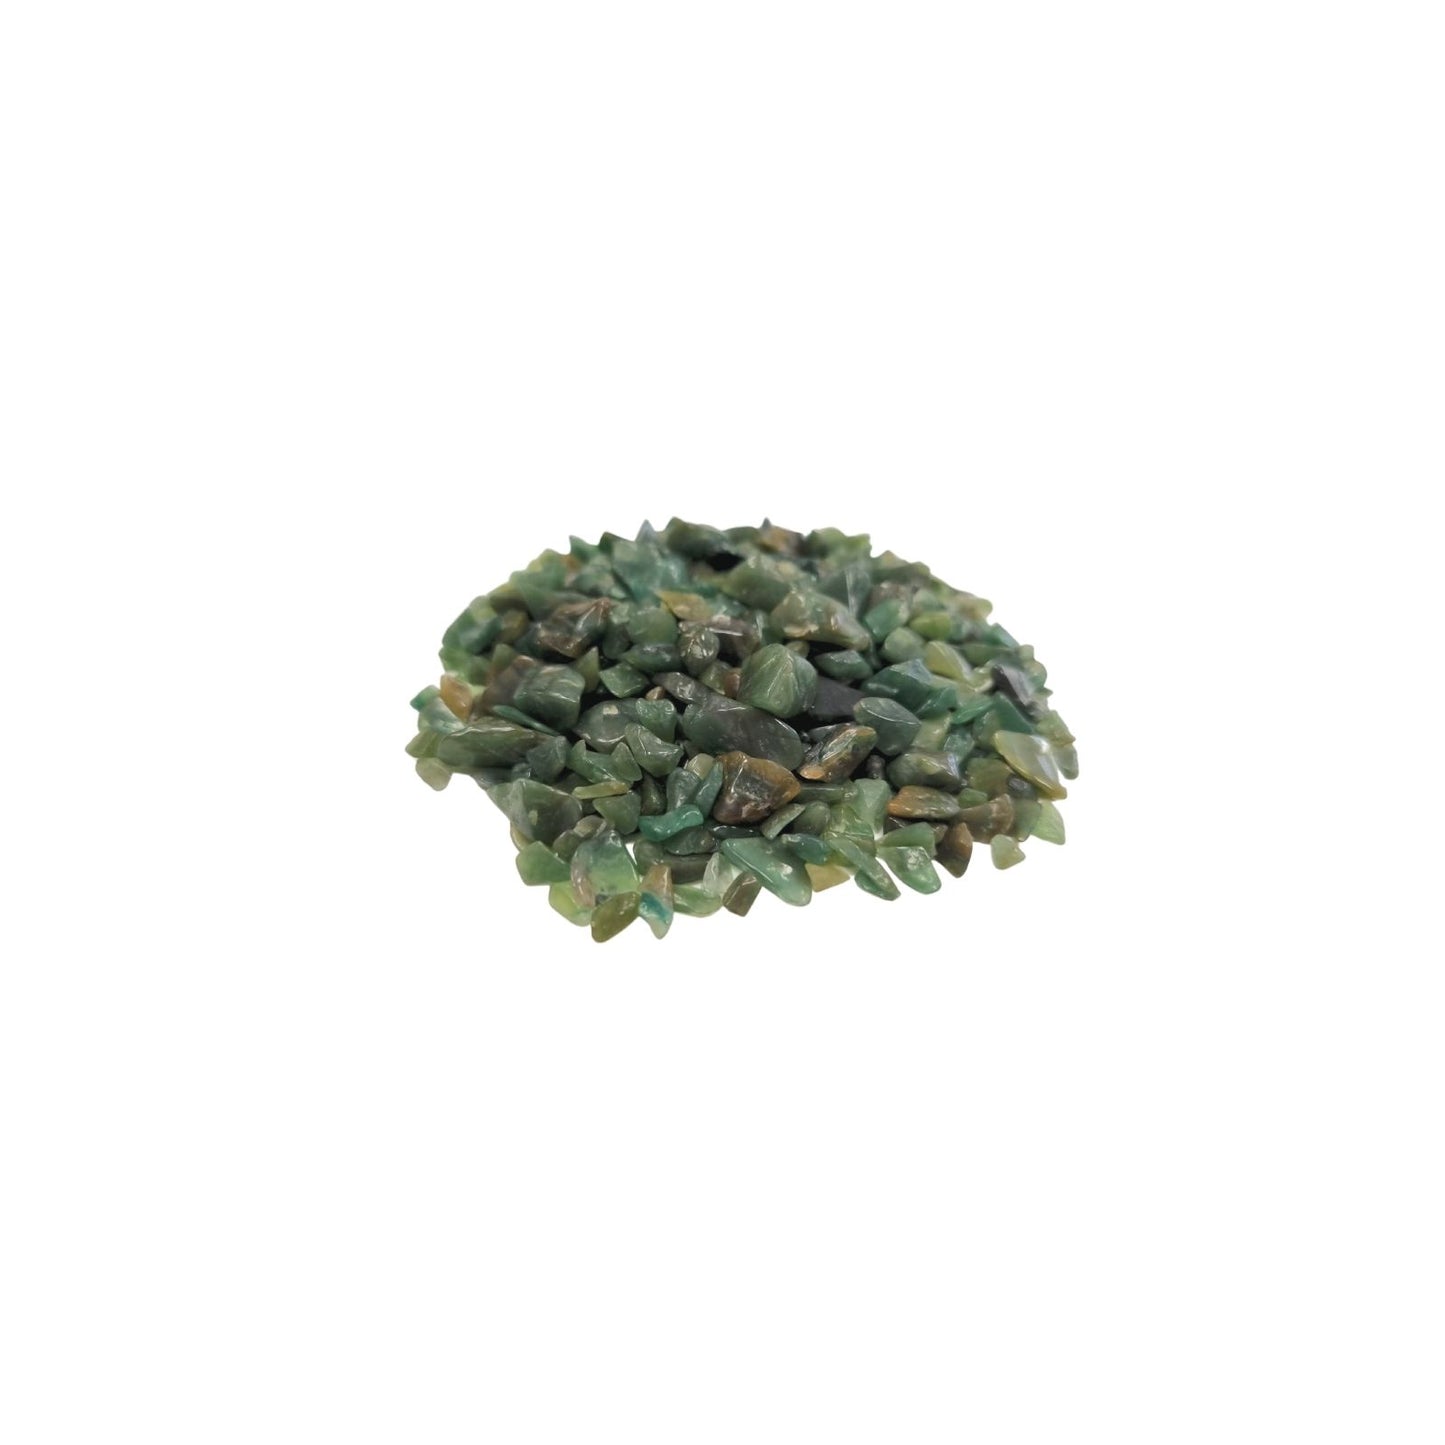 Green Avenurine Gemstone Chips  - 1kg